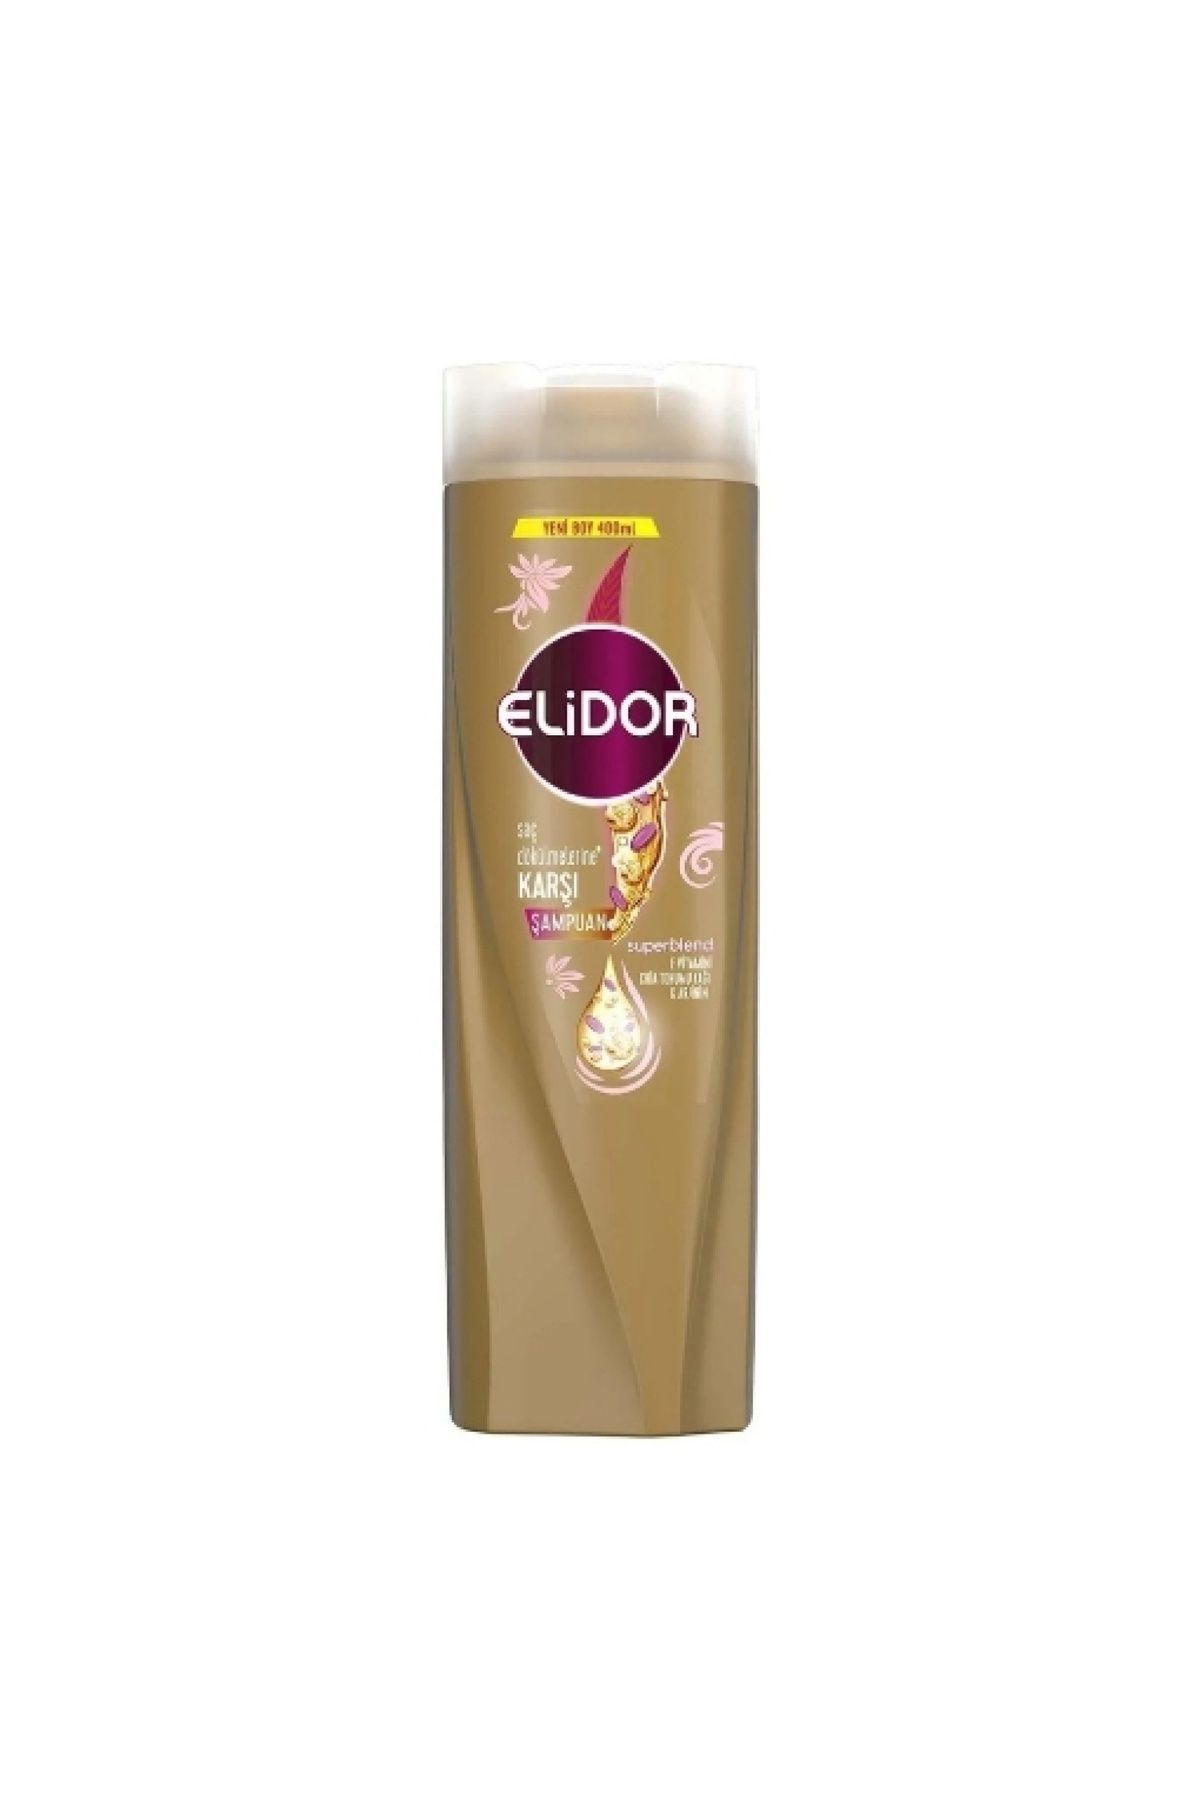 Elidor Şampuan 400 Ml. Saç Dökülmelerine Karşı (12'Lİ)